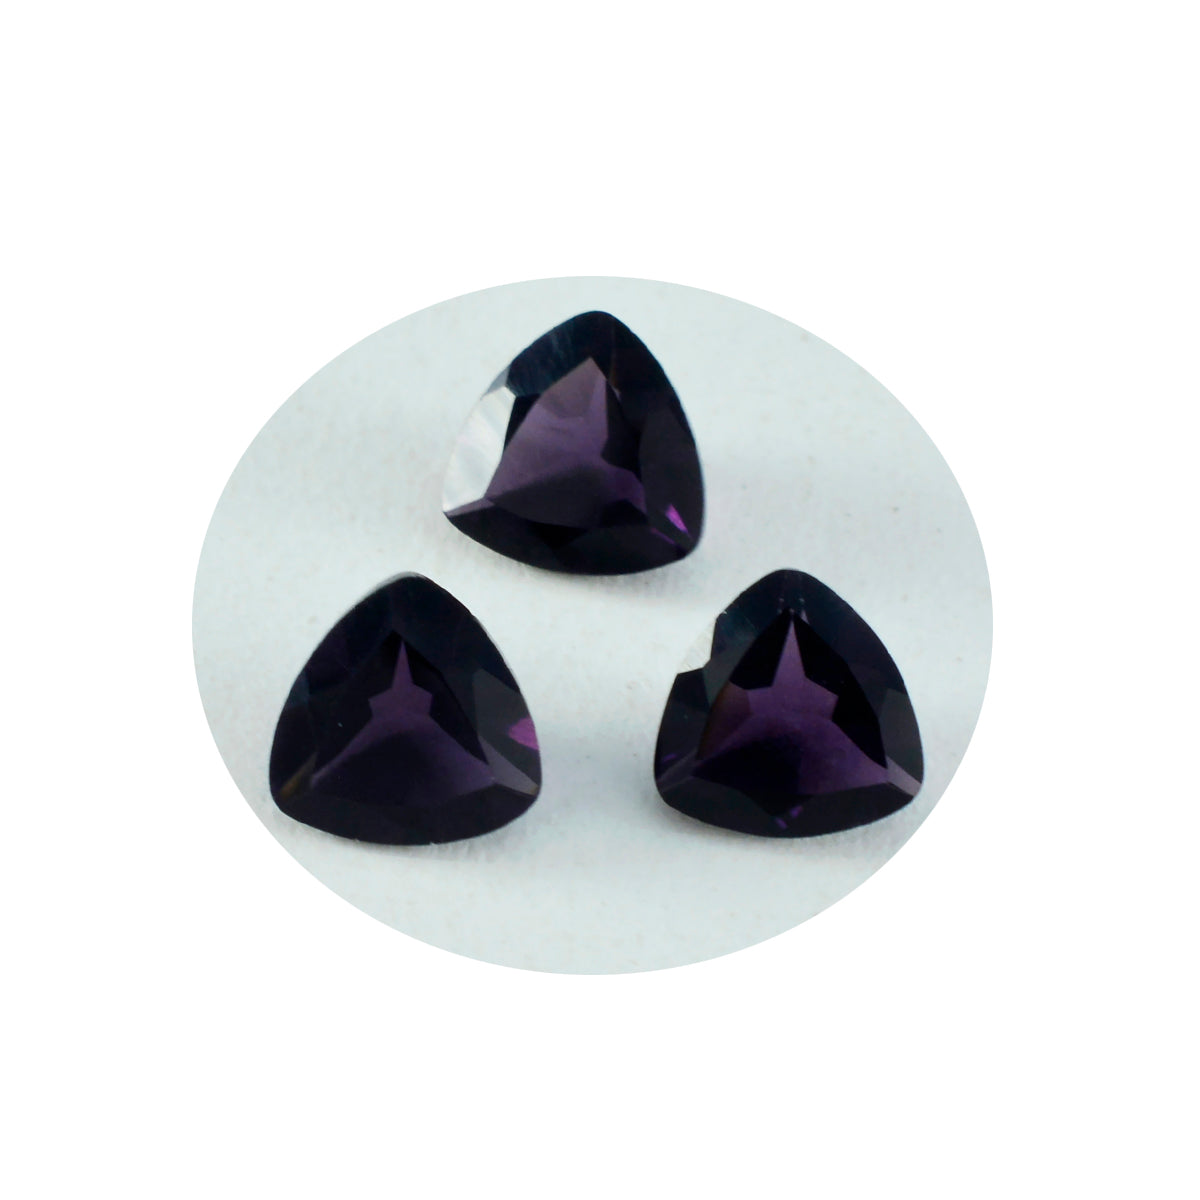 riyogems 1 шт. фиолетовый аметист cz граненый 15x15 мм форма триллиона довольно качественный свободный камень